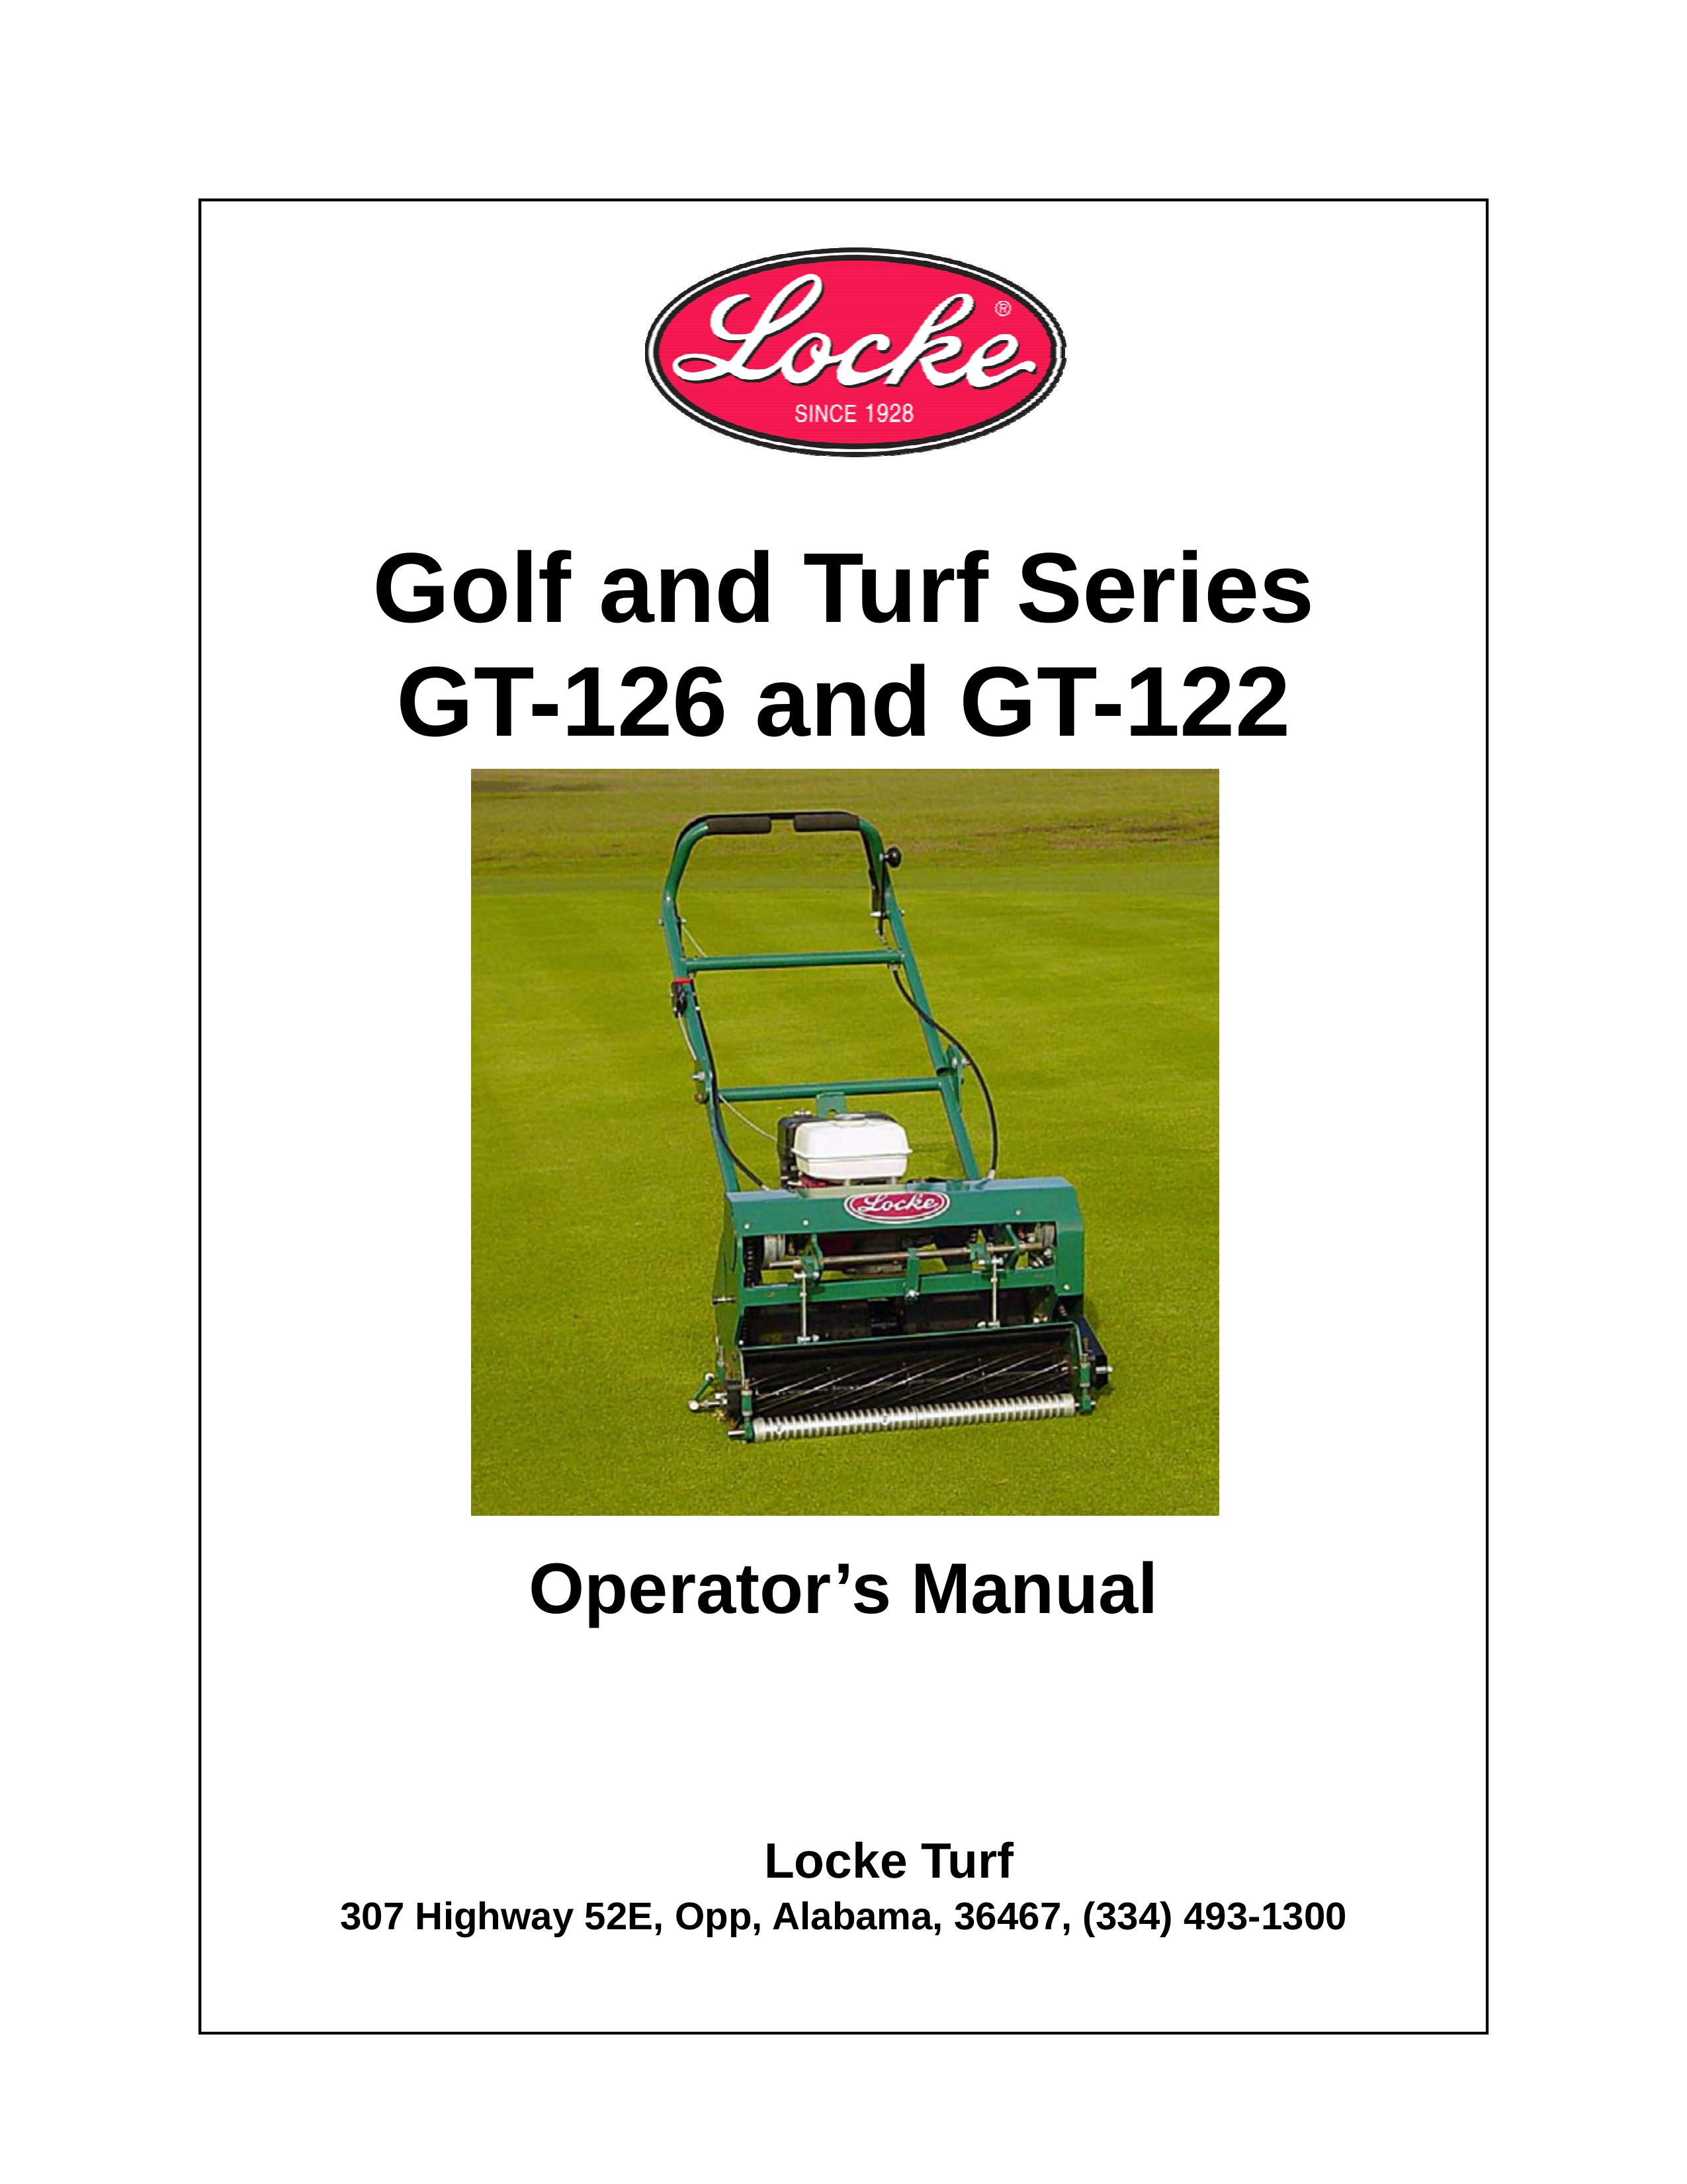 Locke GT-122 Lawn Mower User Manual